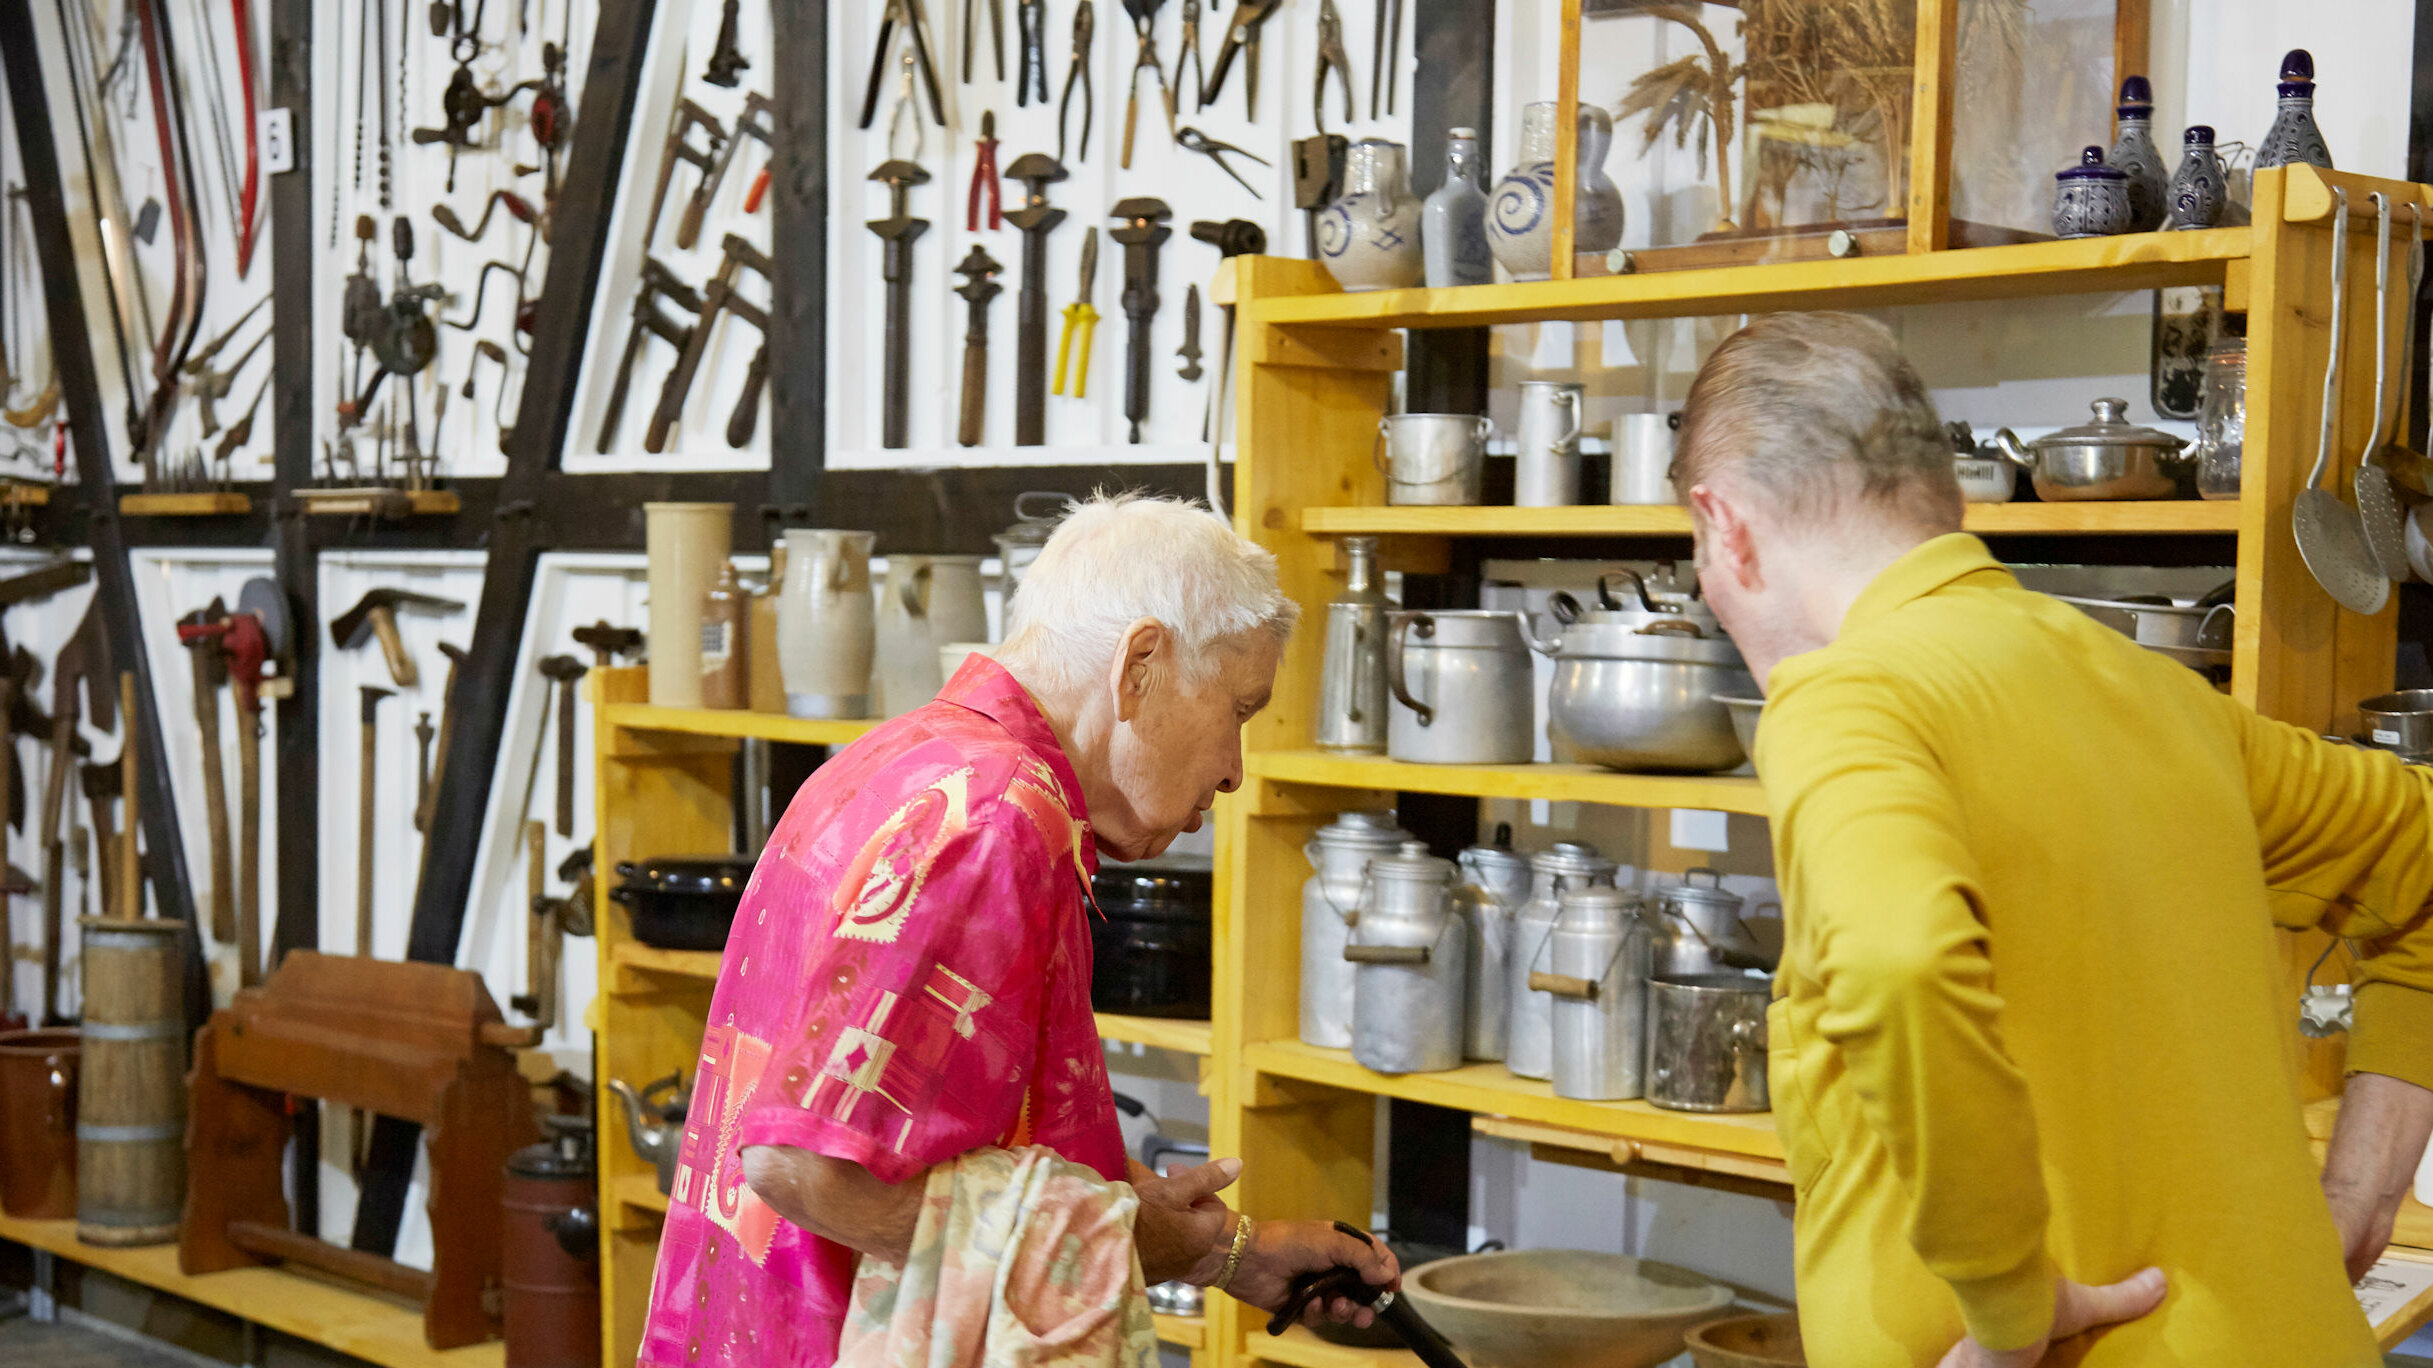 Auf dem Foto schauen sich zwei Senioren eine Ausstellung von alten Töpfen an